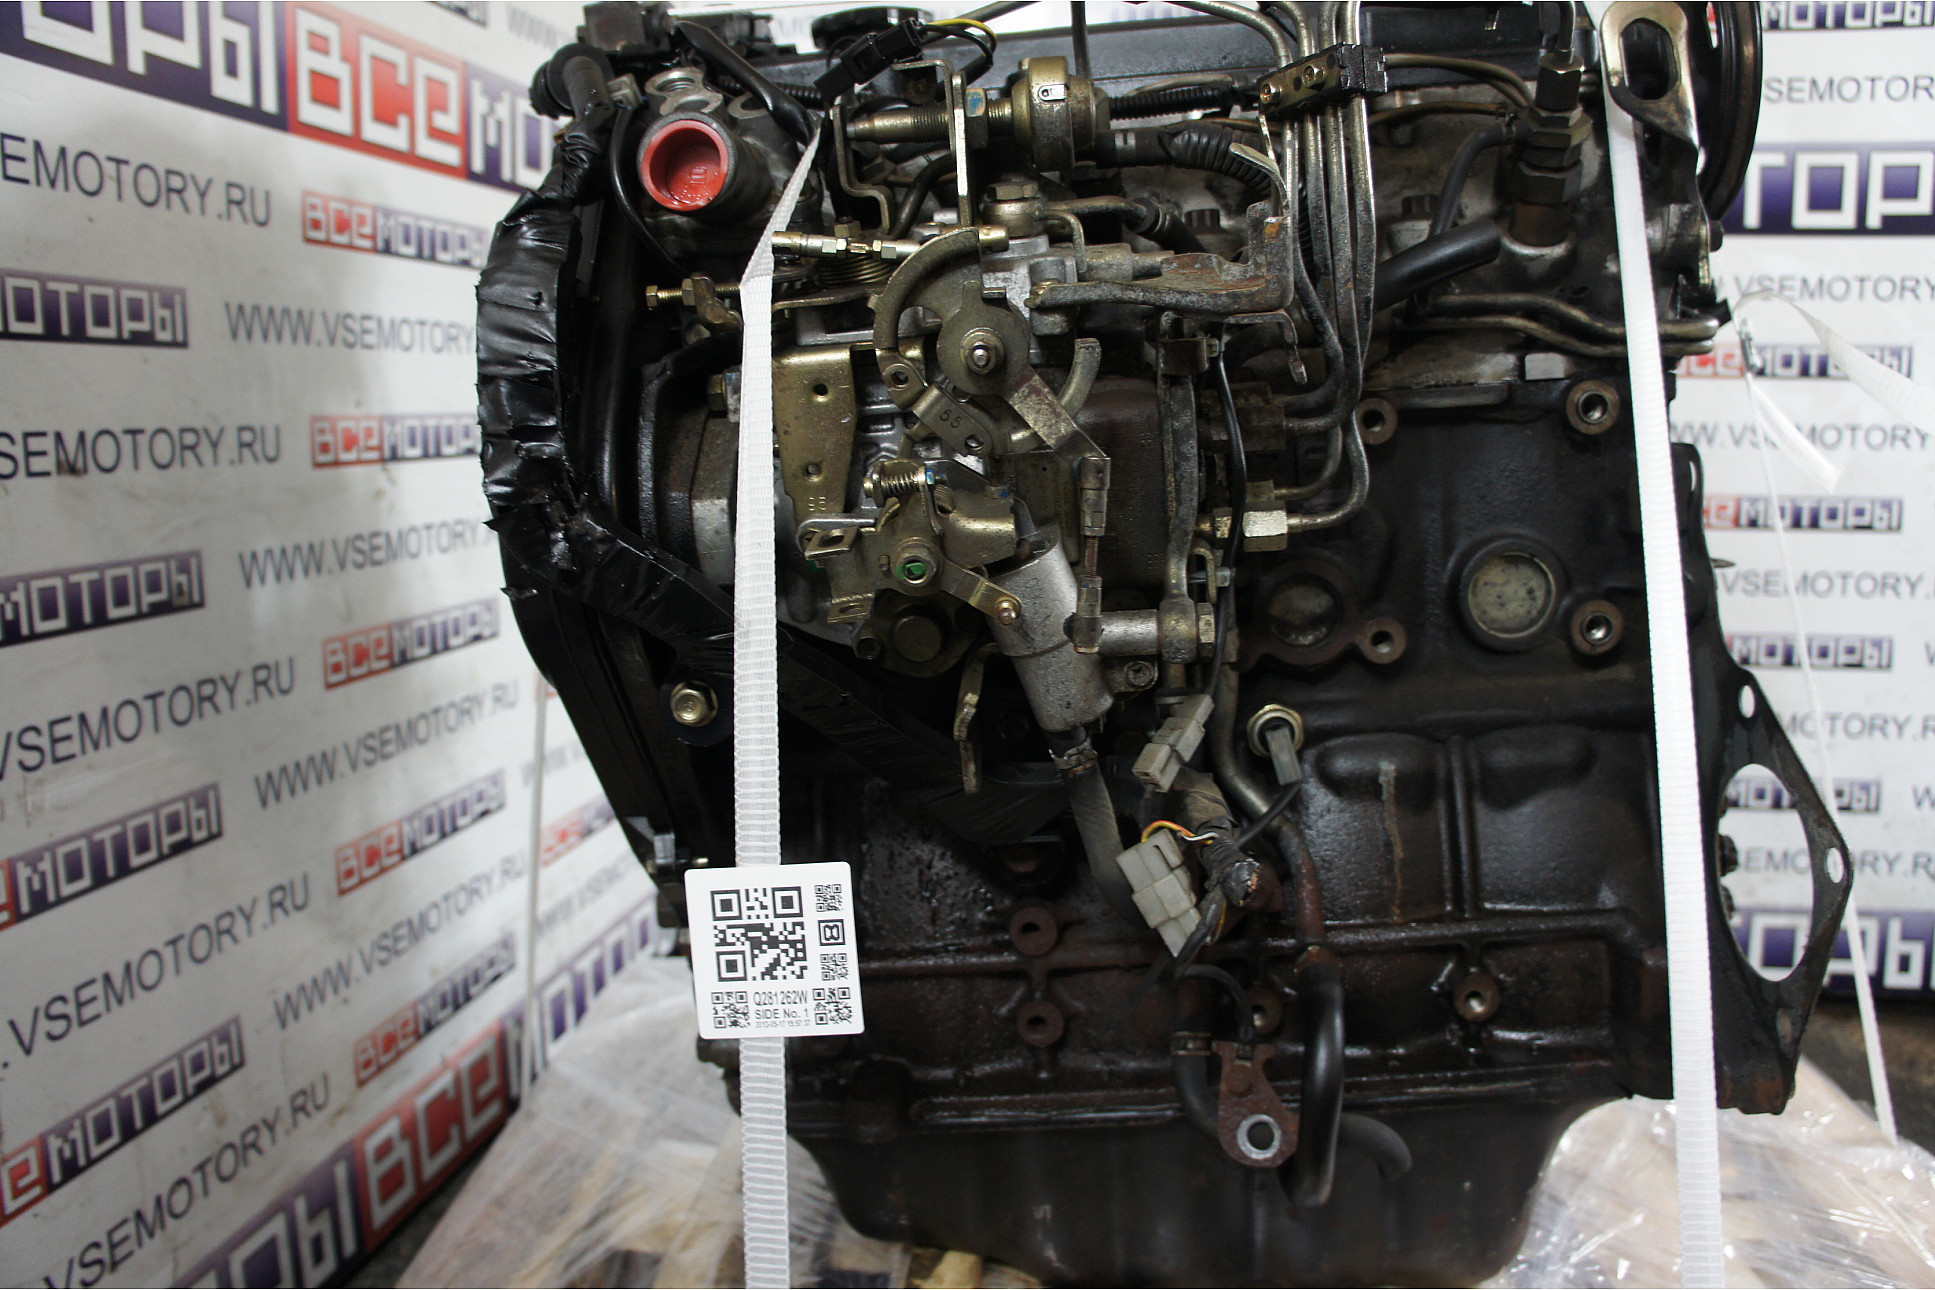 Серийные двигатели мазда сх-5 2.0 и 2.5: особенности конструкции и ремонт